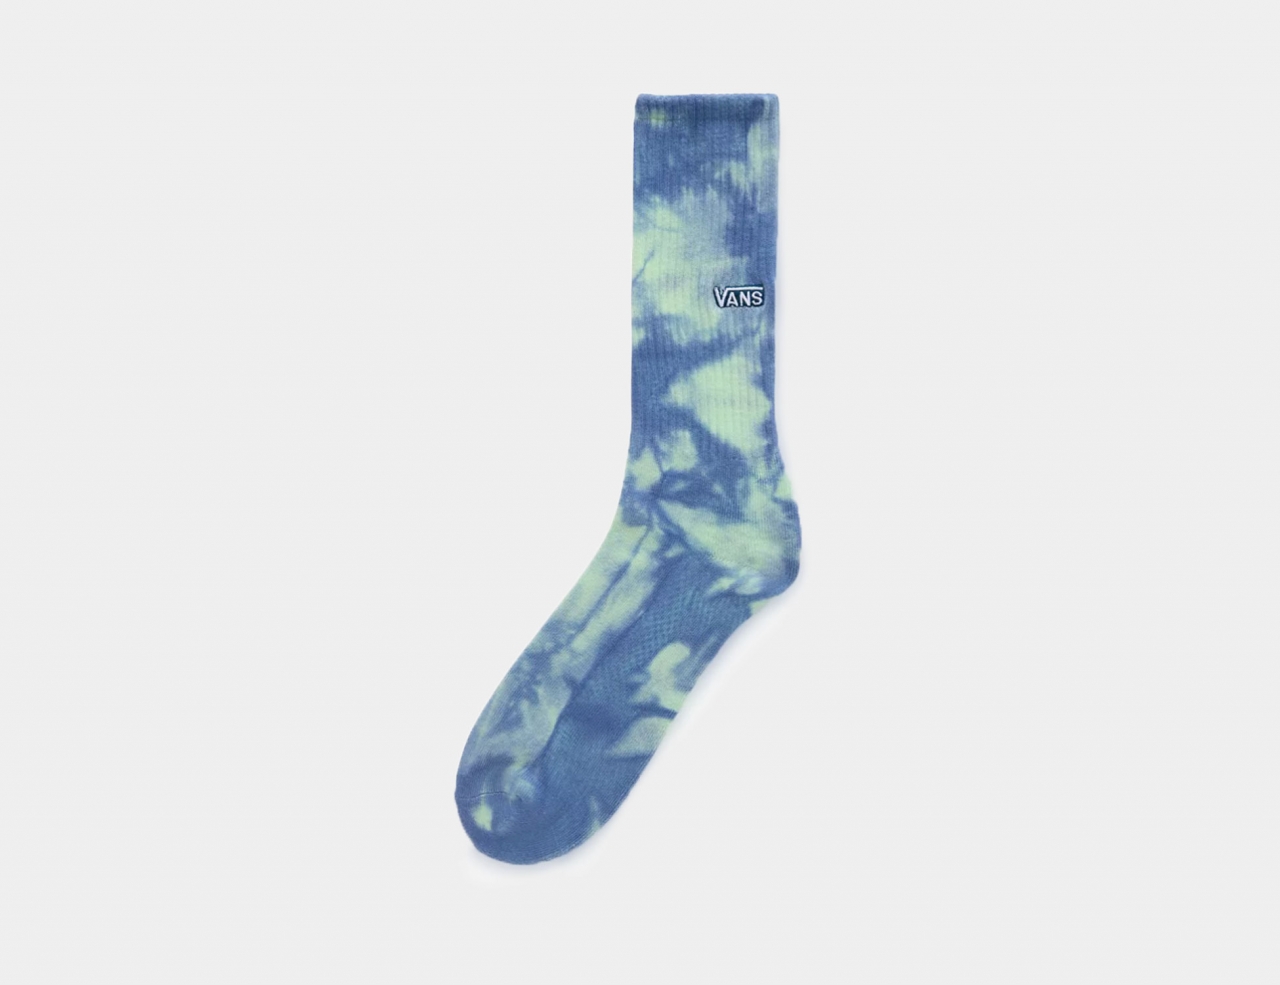 VANS Seasonal Tie Dye Crew Socke - Midnight